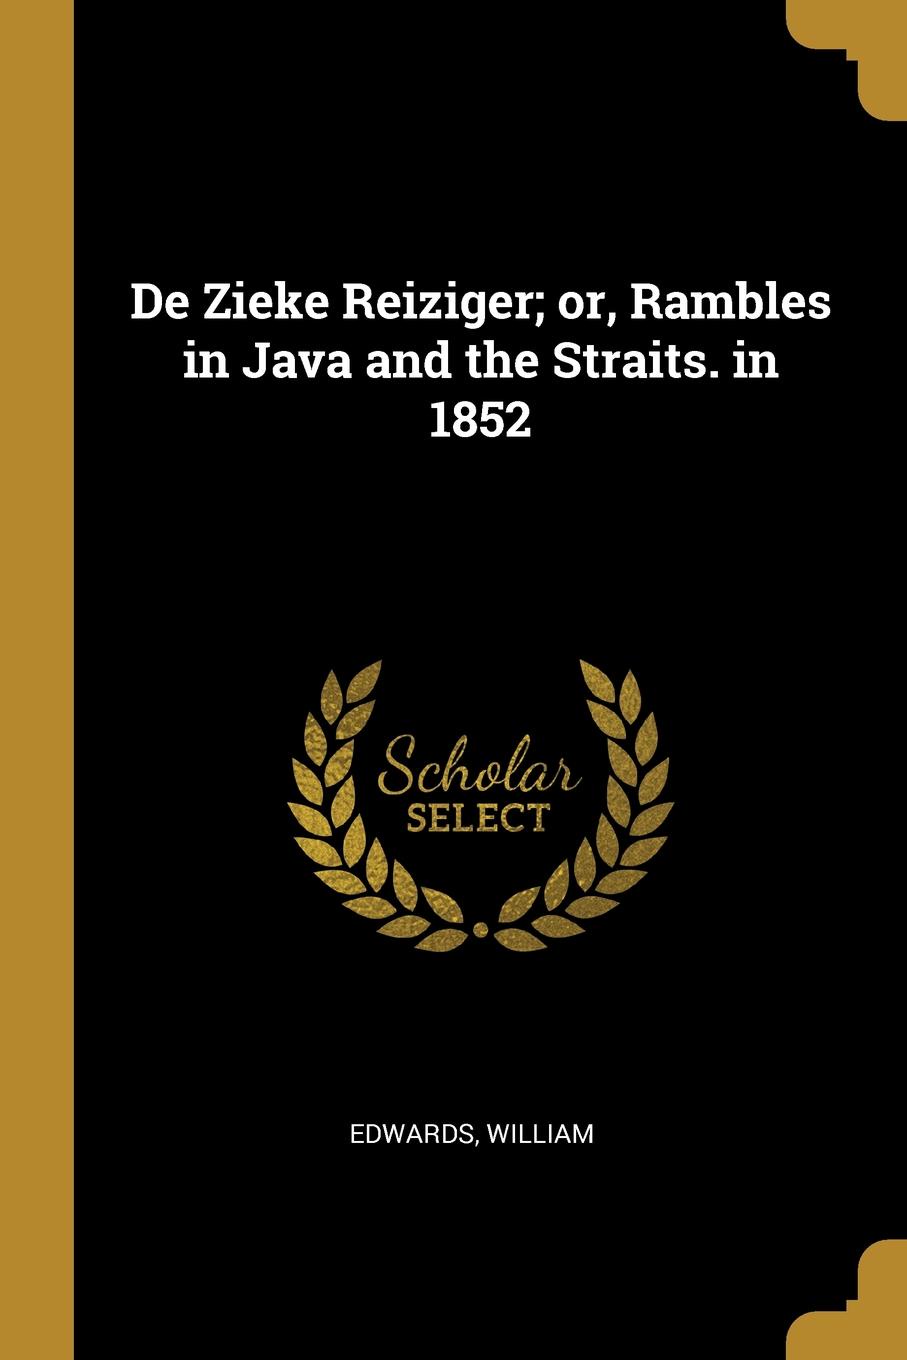 De Zieke Reiziger; or, Rambles in Java and the Straits. in 1852